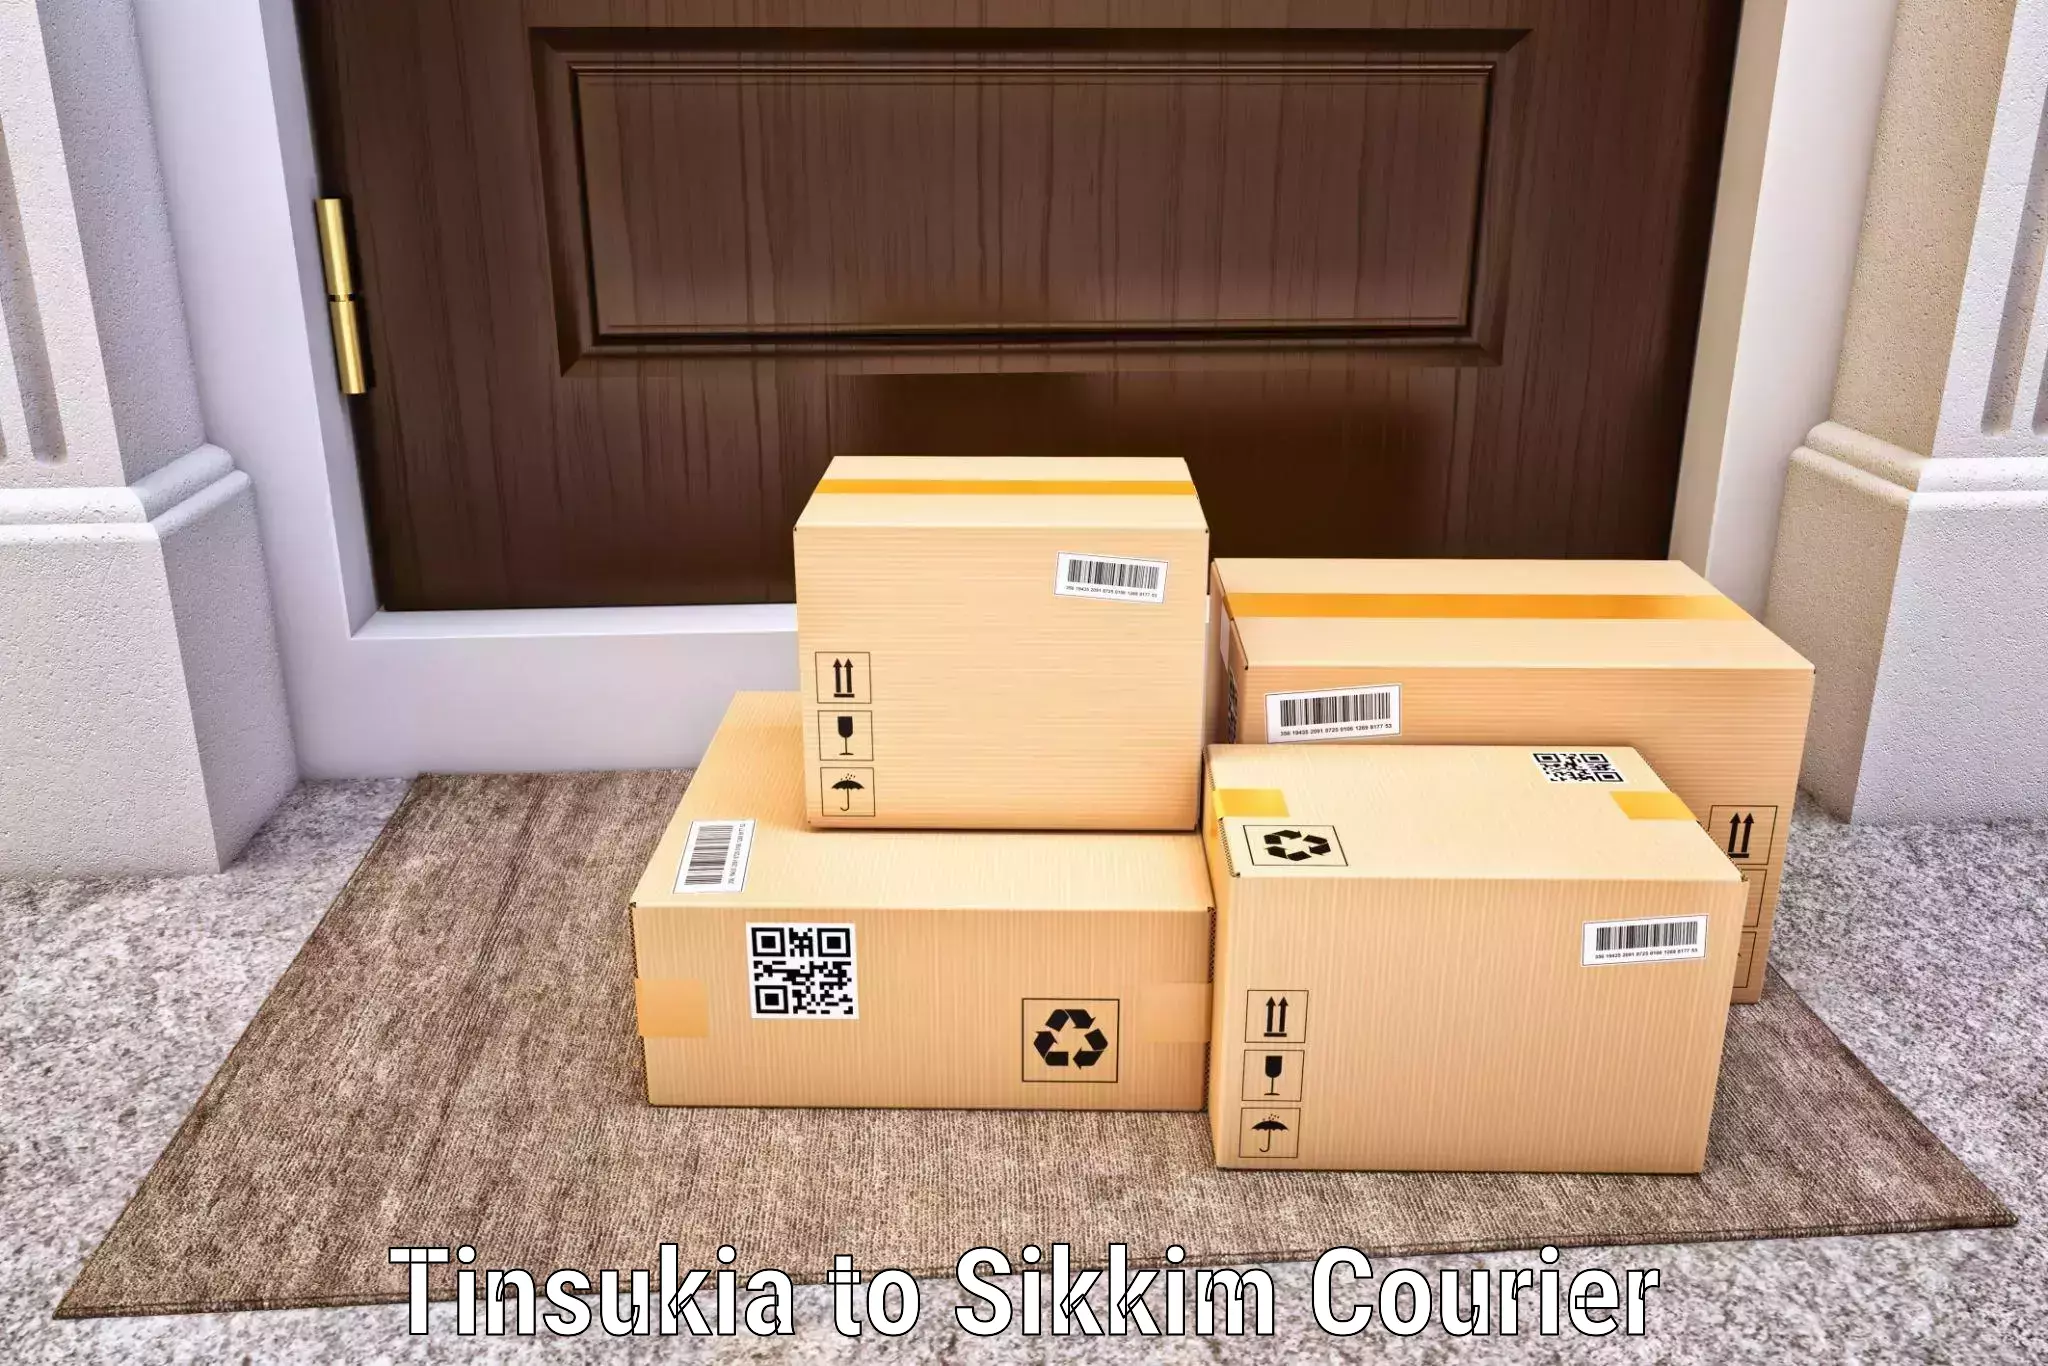 Courier insurance Tinsukia to Geyzing